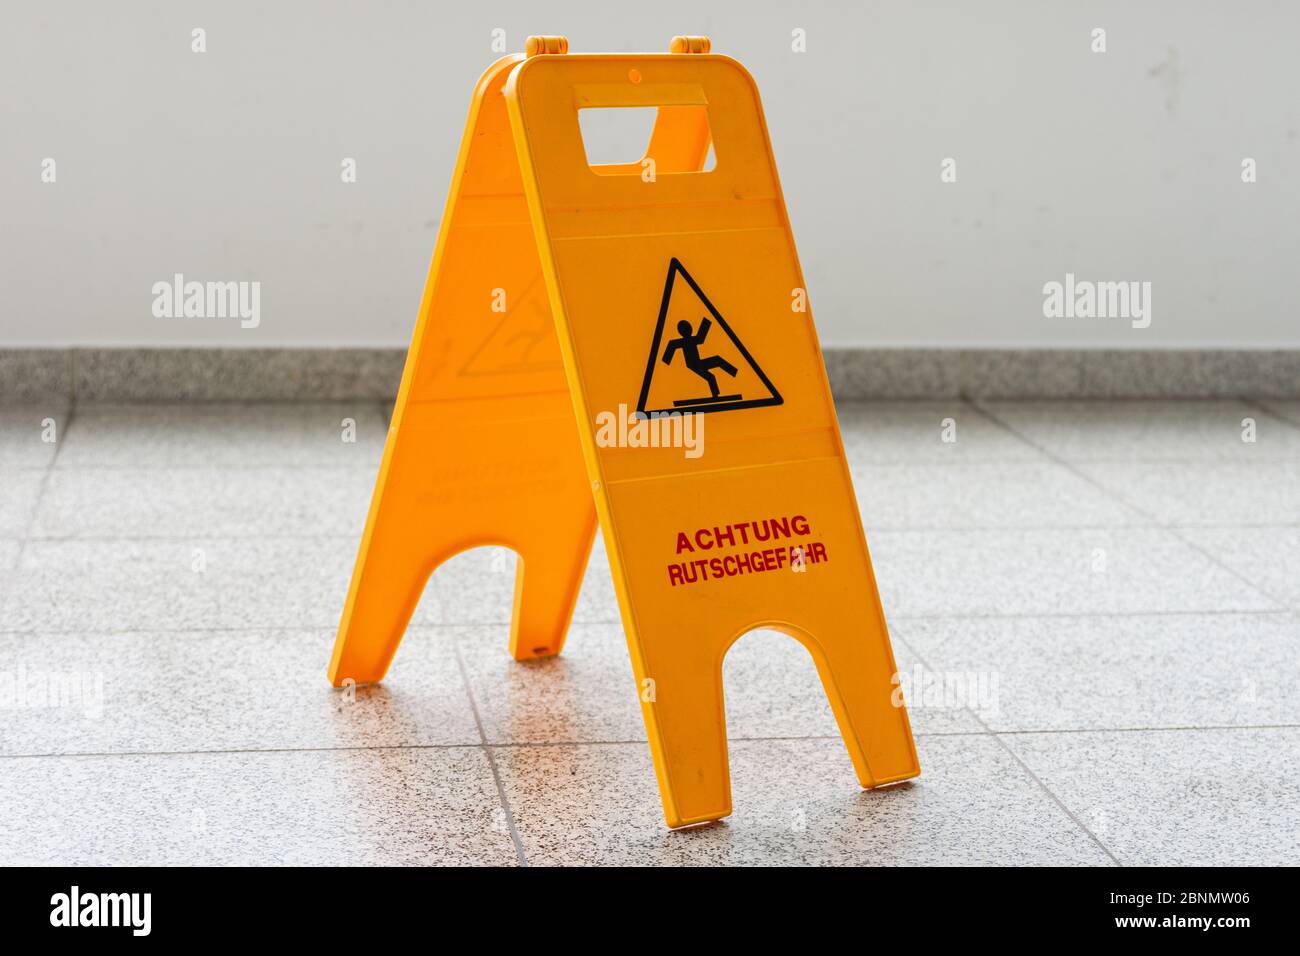 Attenzione pavimento bagnato o pulizia in corso. Un segno giallo avverte di pericolo. Foto Stock